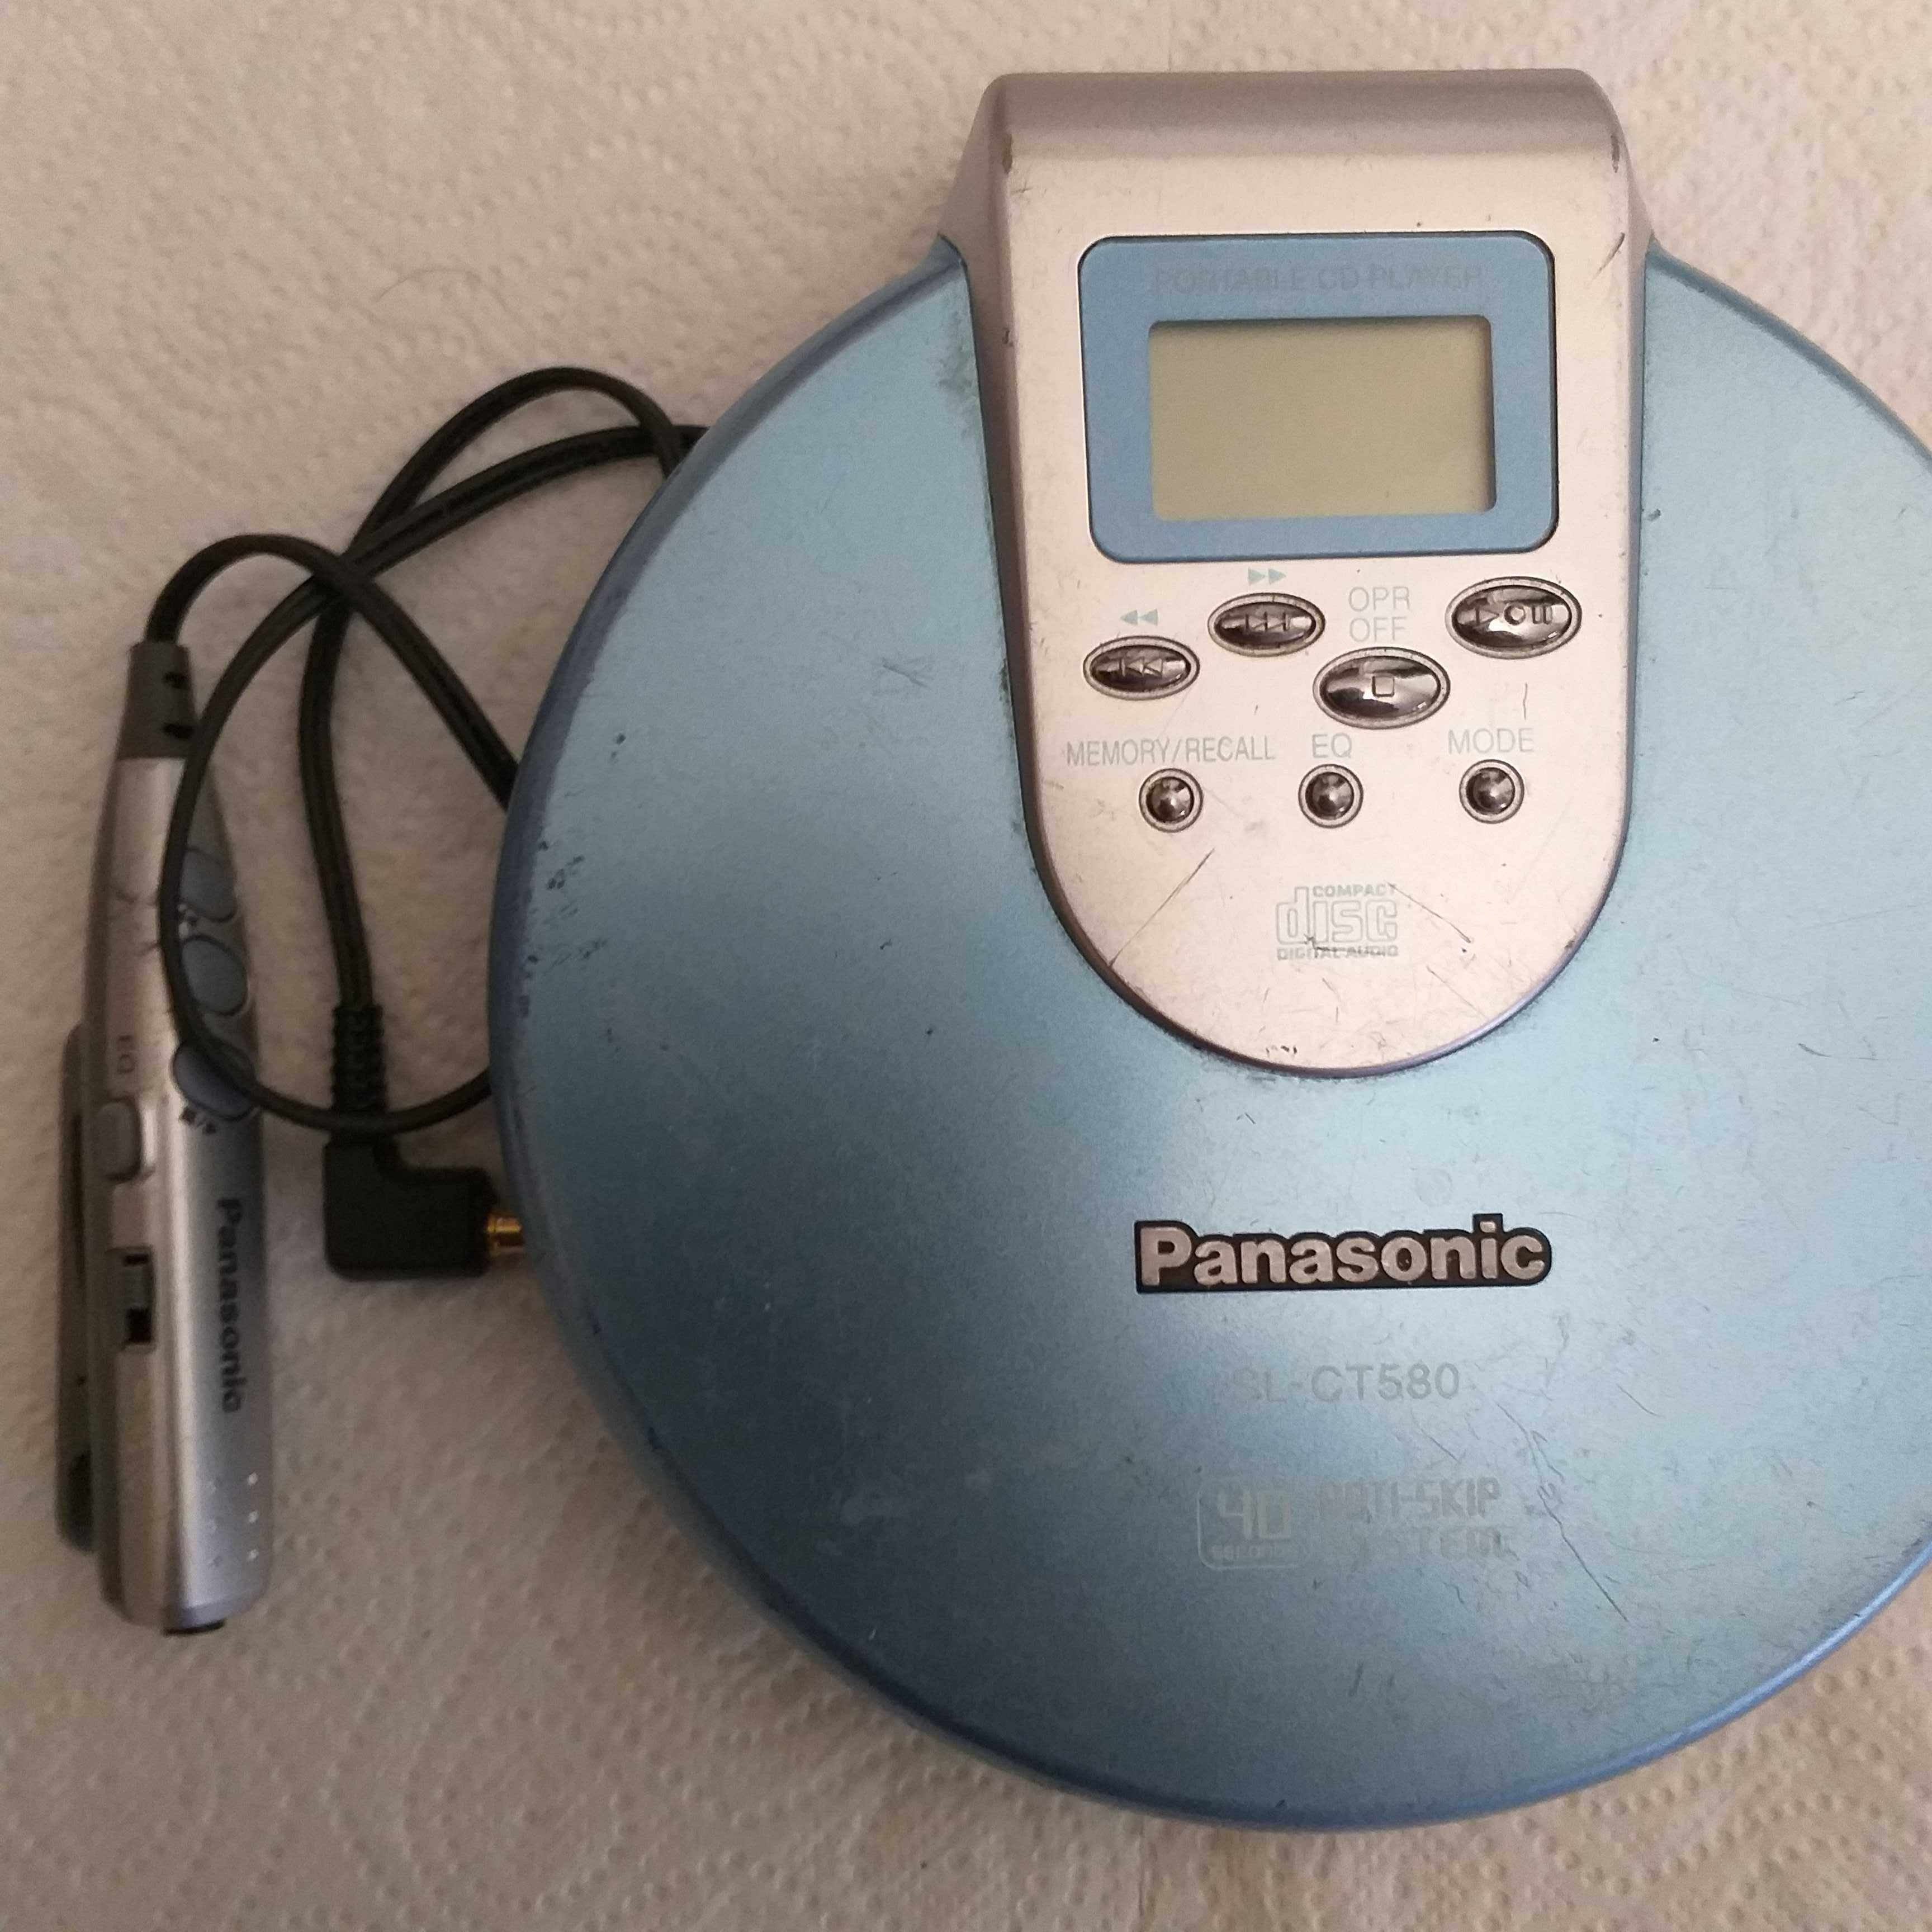 CD Плеер Panasonic SL-st580 в рабочем состоянии.Оригинал.